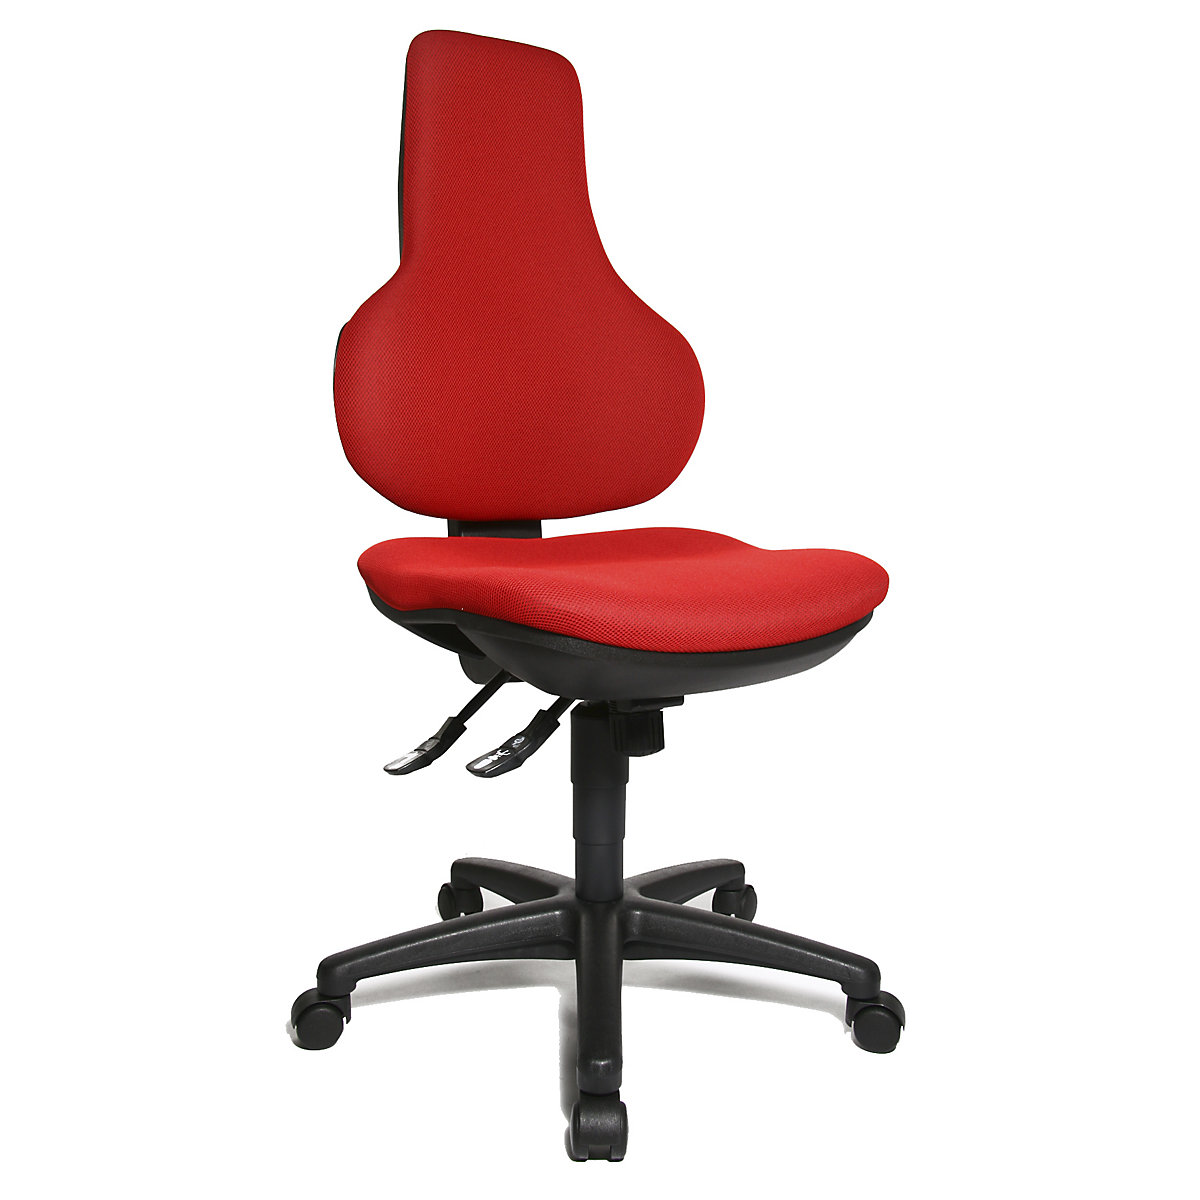 Okretna uredska stolica ERGO POINT SY – Topstar, s ergonomskim naslonom za leđa s mogućnošću namještanja visine, u crvenoj boji-5